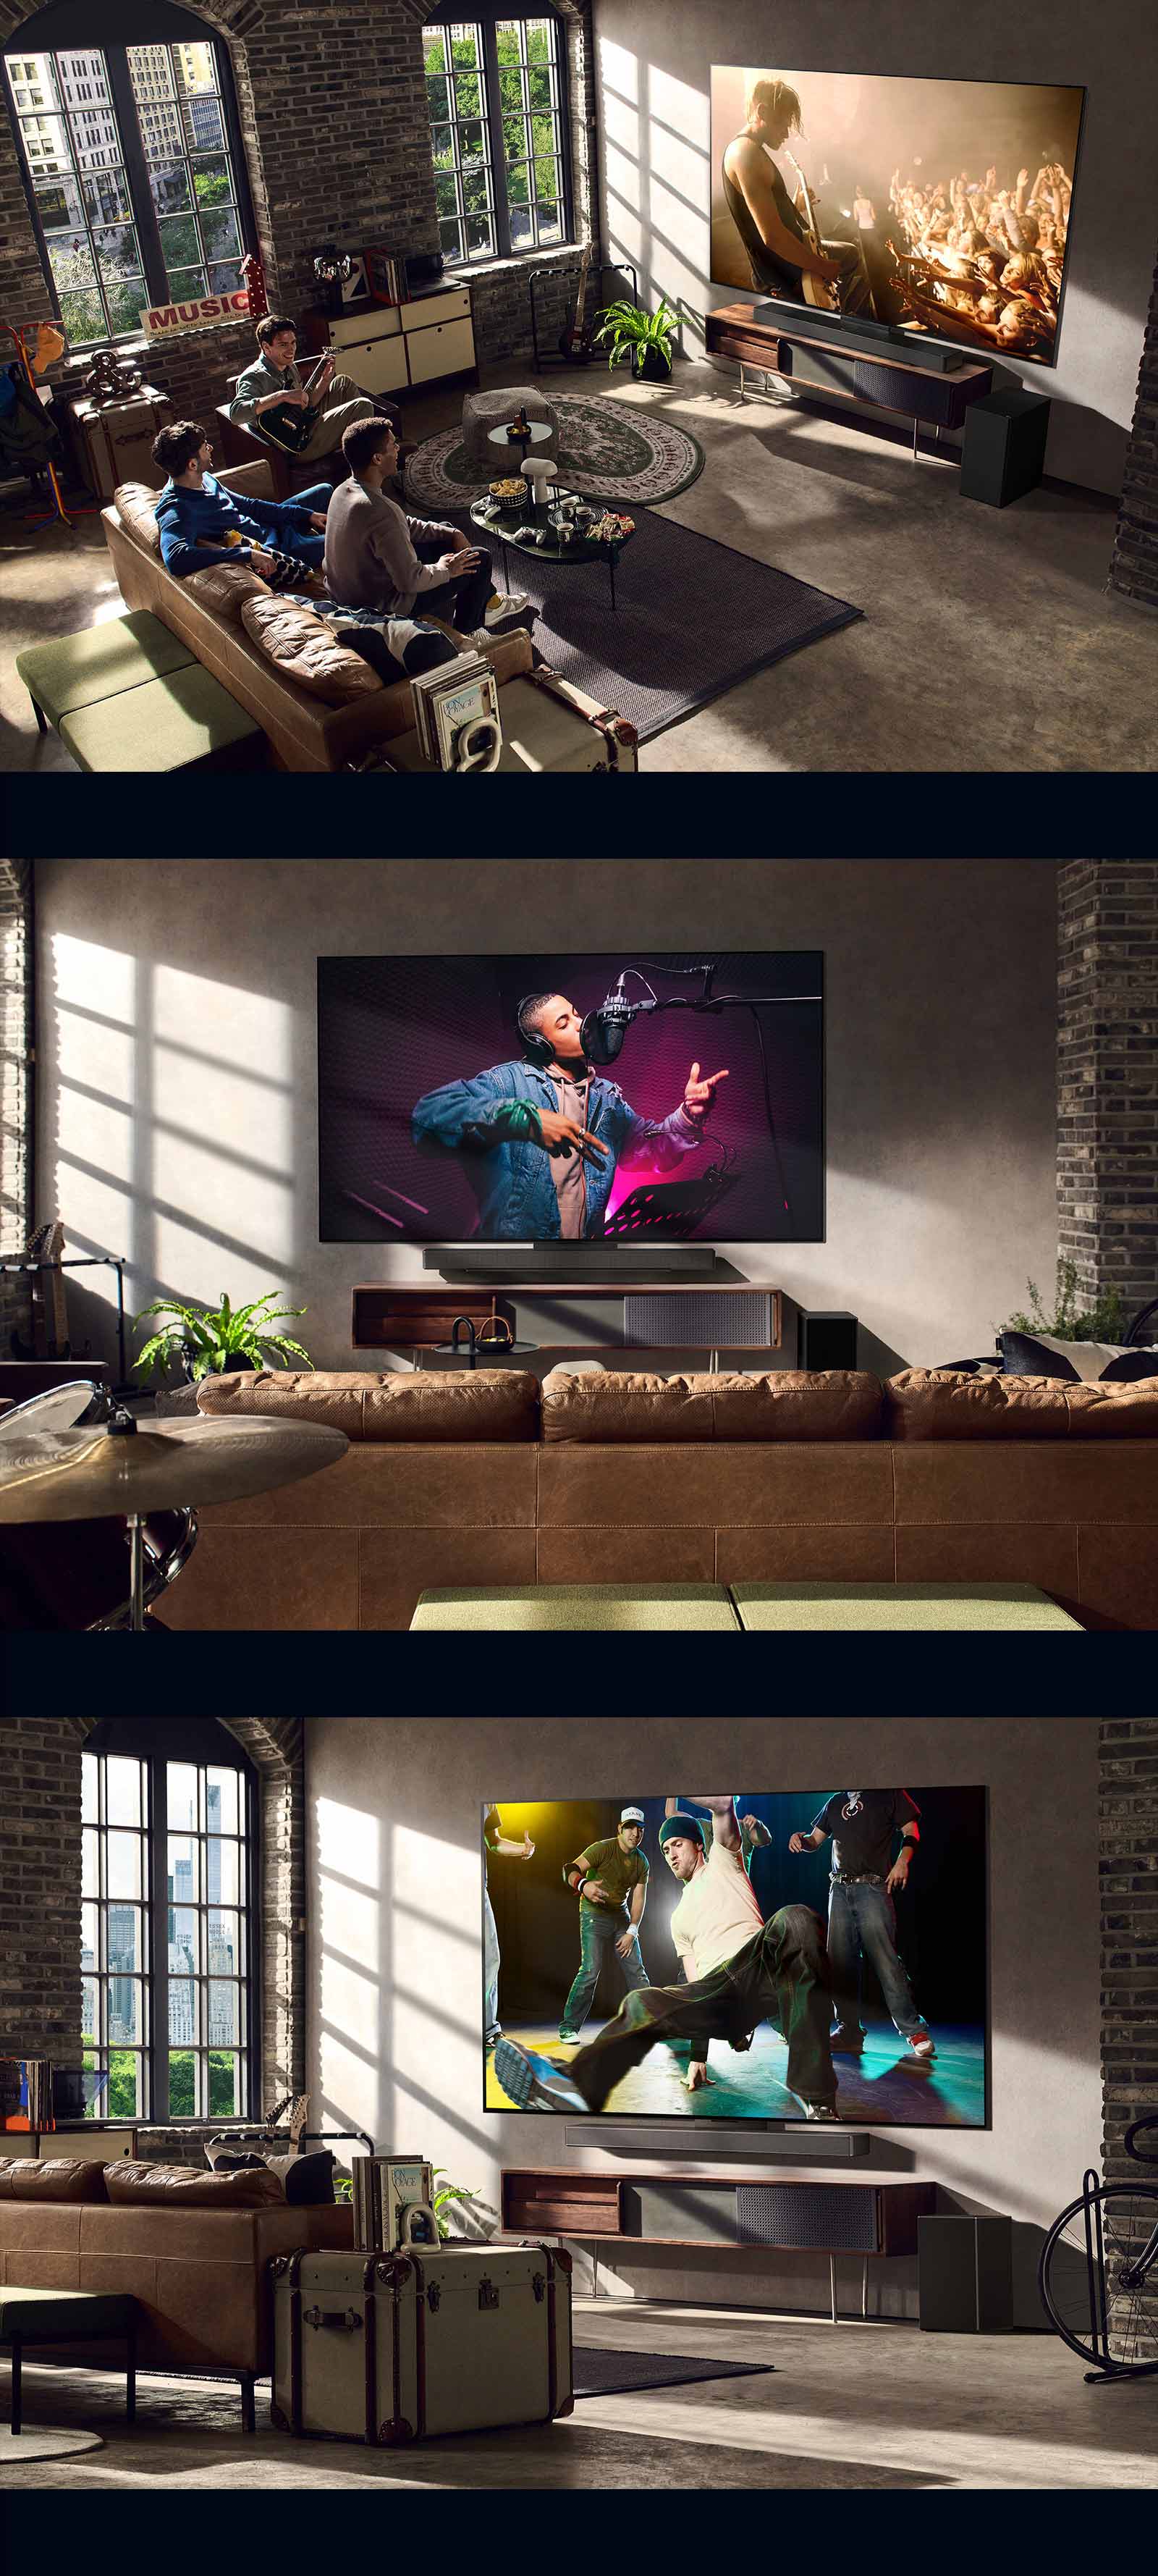 Три зображення зі сценами з життя. Зверху вниз: троє чоловіків насолоджуються відео концерту у вітальні. На стіні висить телевізор LG, що показує сцену запису музики. Внизу телевізор LG на стіні показує сцену брейк-дансу в діагональному ракурсі.